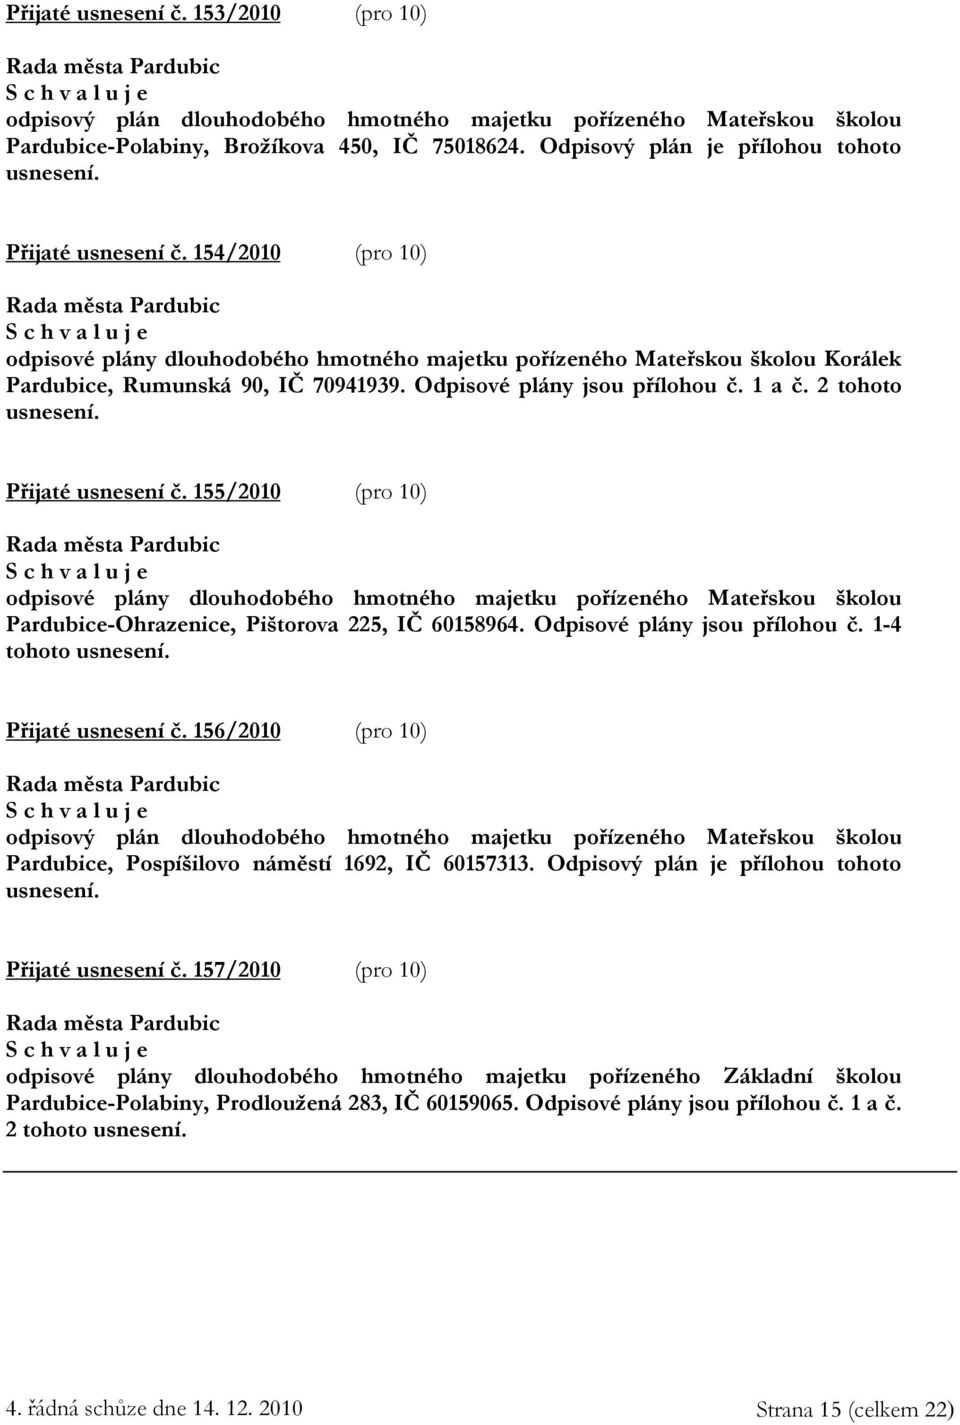 2 tohoto usnesení. Přijaté usnesení č. 155/2010 (pro 10) odpisové plány dlouhodobého hmotného majetku pořízeného Mateřskou školou Pardubice-Ohrazenice, Pištorova 225, IČ 60158964.